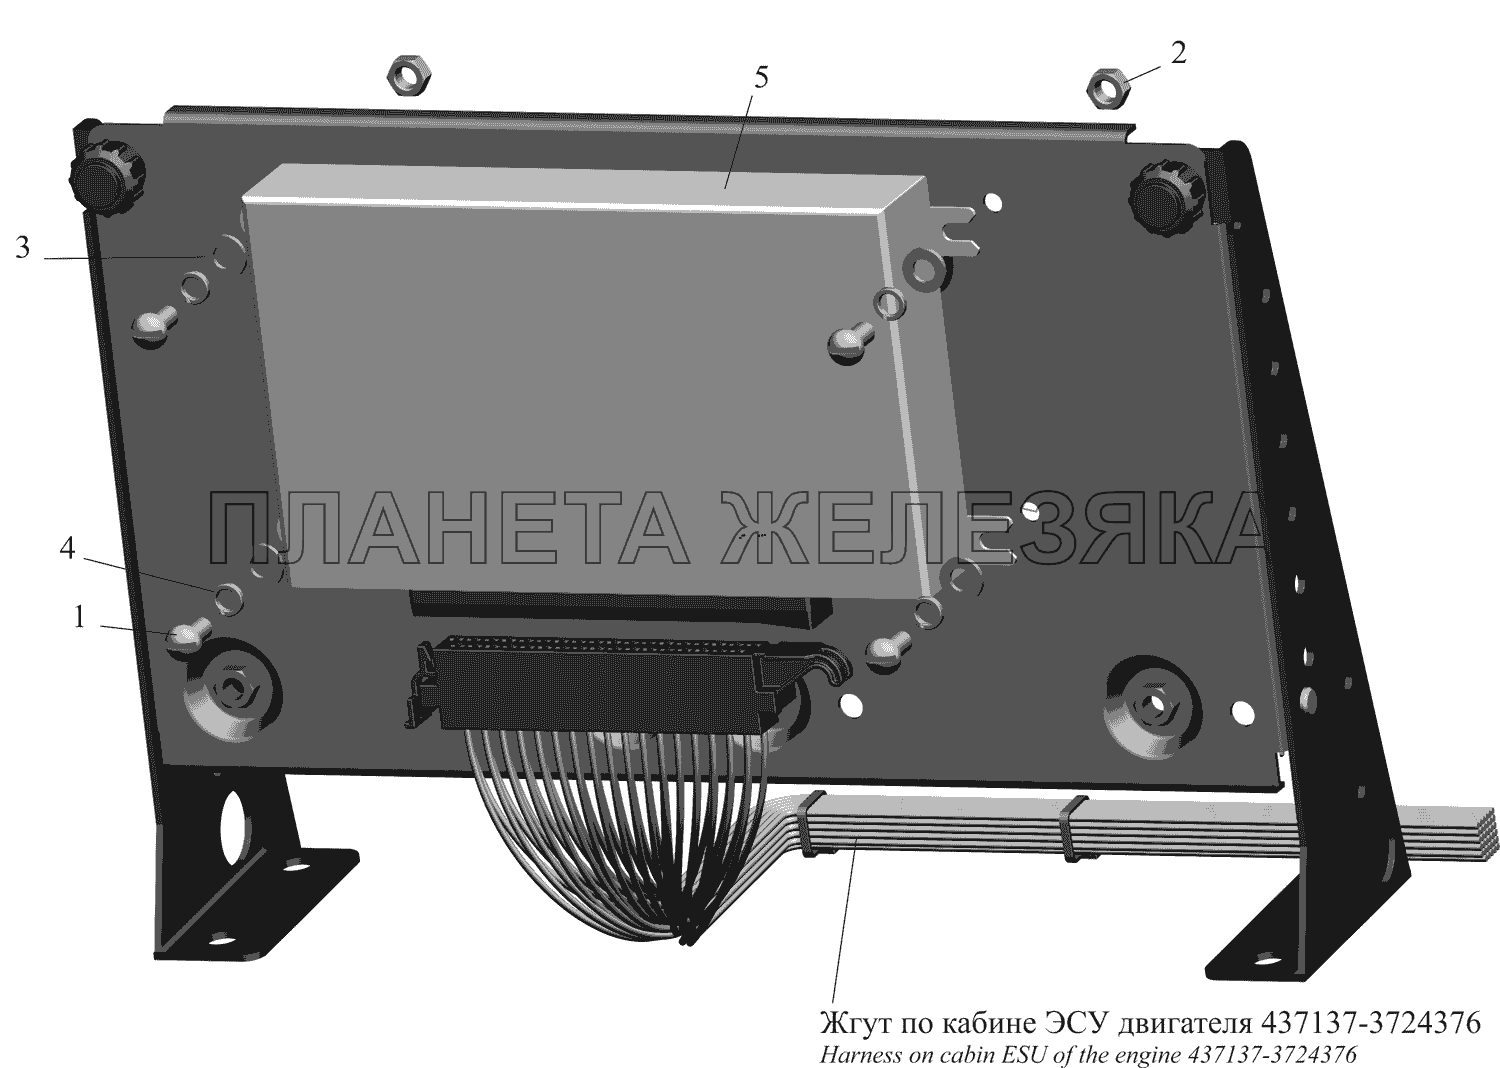 Установка электронного блока ЭСУ МАЗ-437130 (Зубренок)